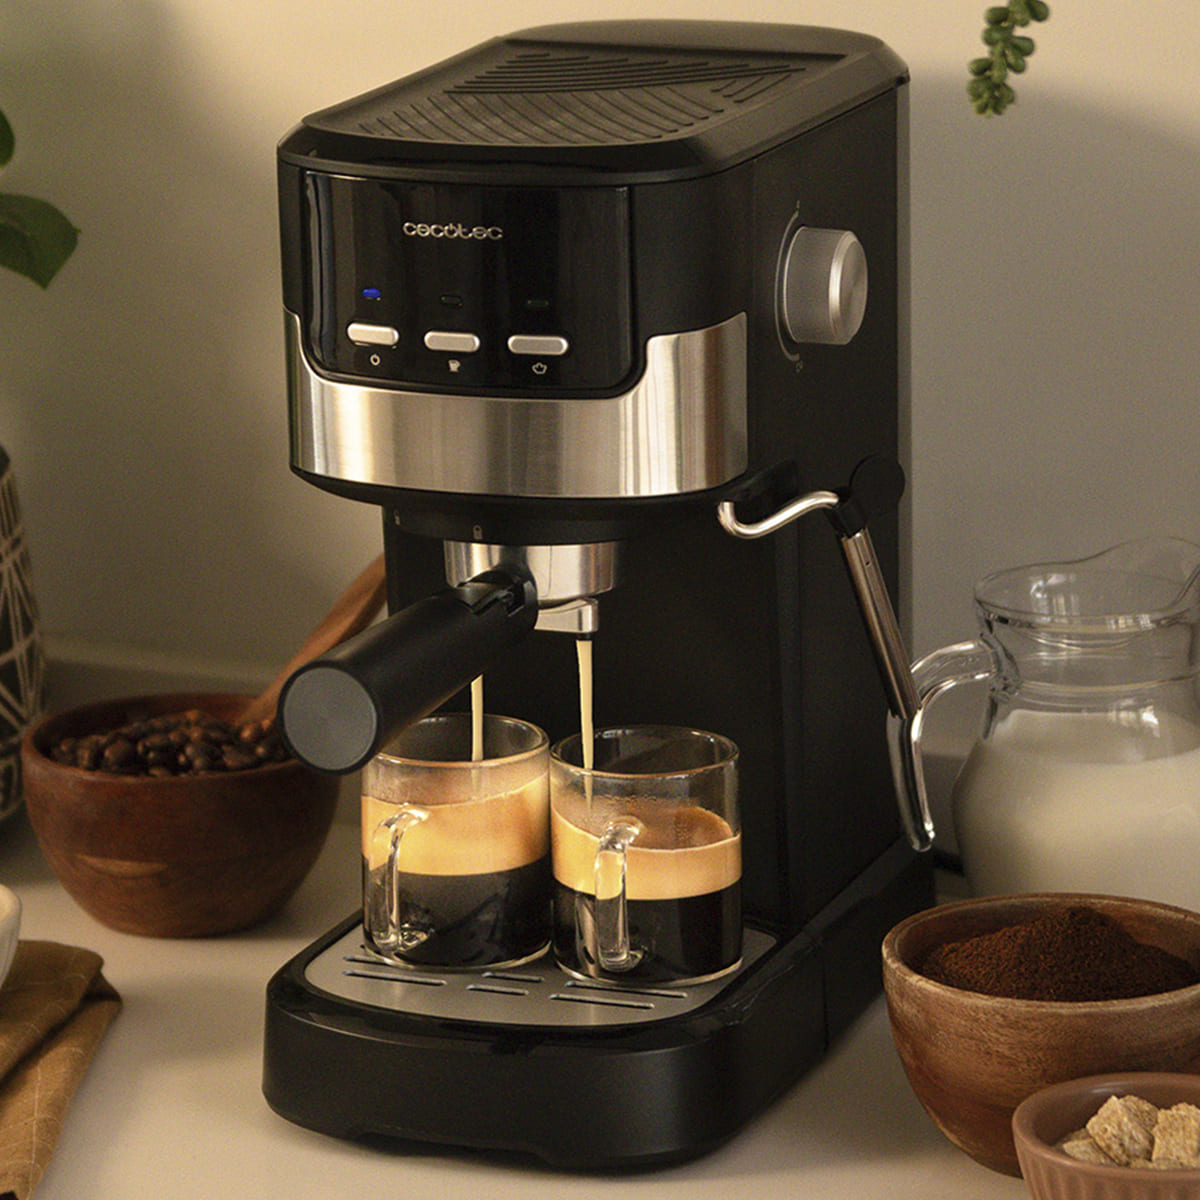 Кофеварка Cecotec Power Espresso 20 Pecan (CCTC-01724) отзывы - изображения 5